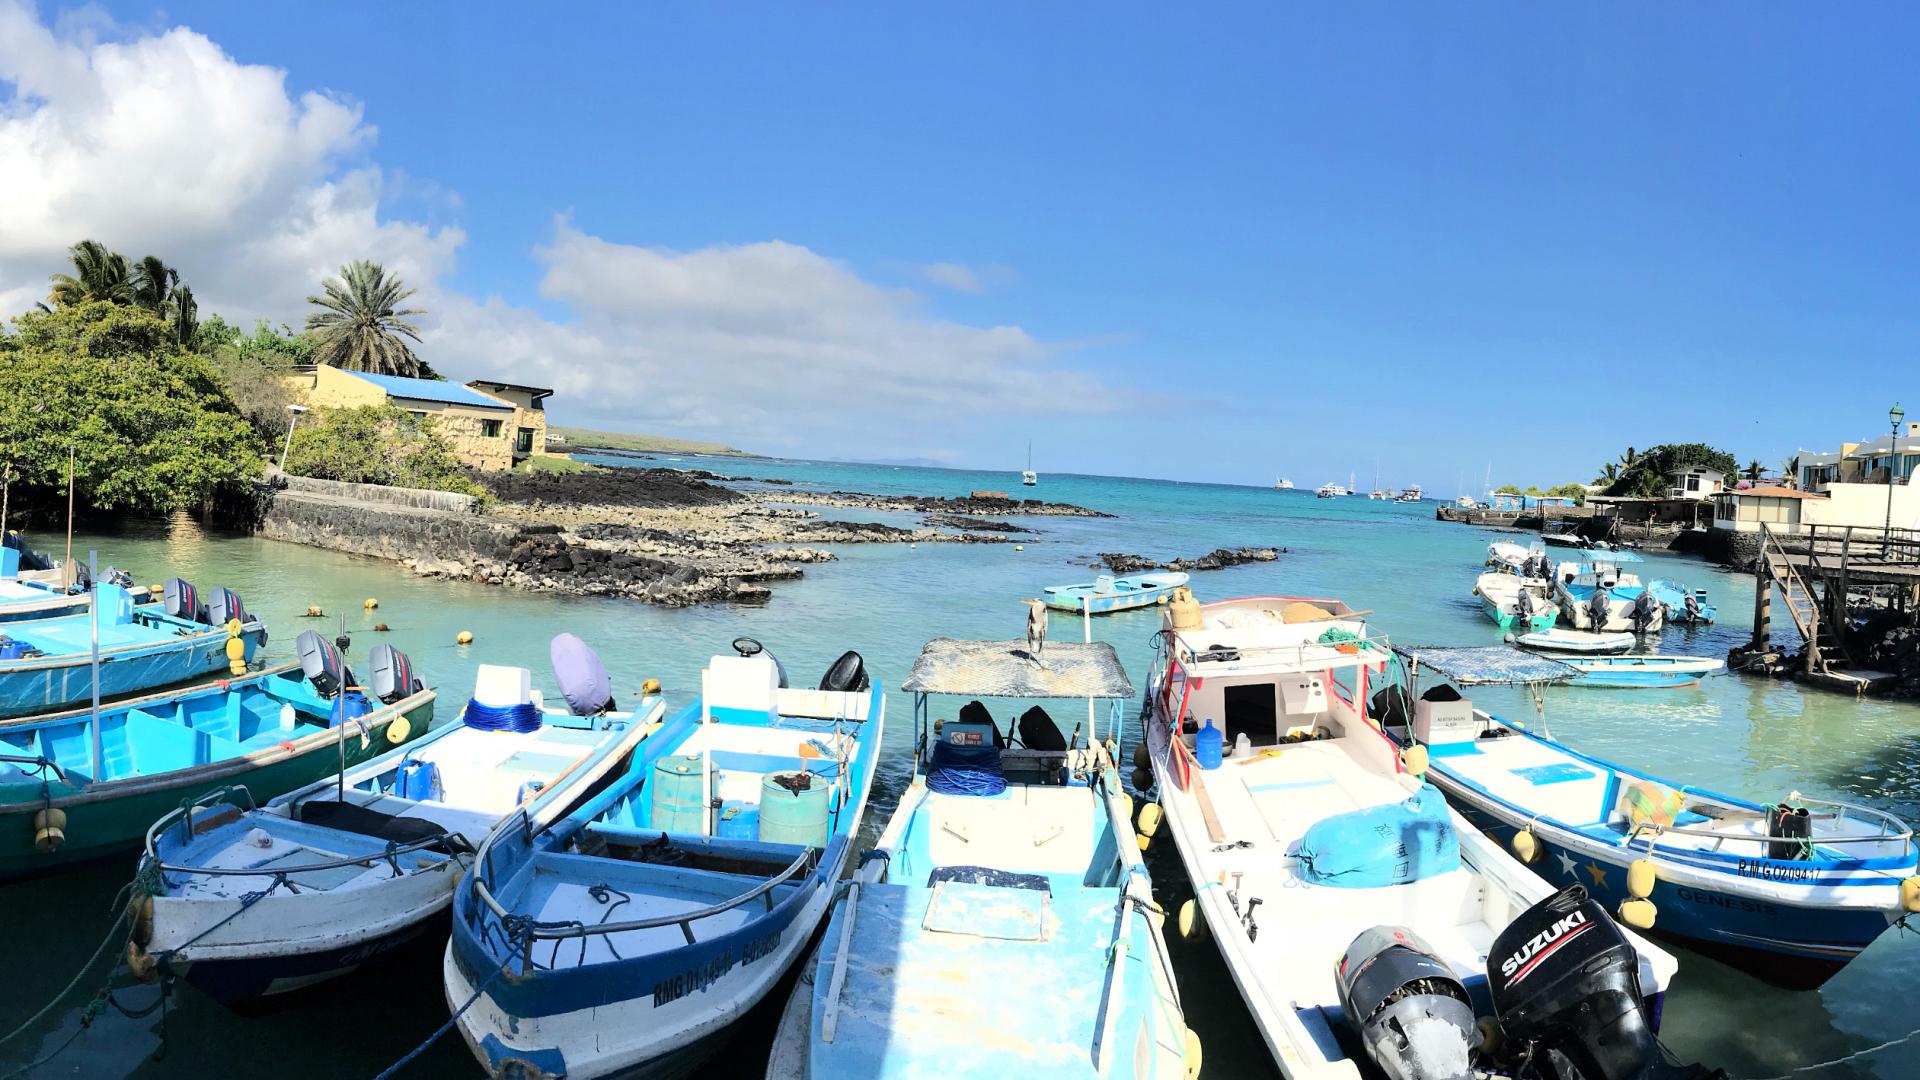 Galapagos rejser grupper for unge